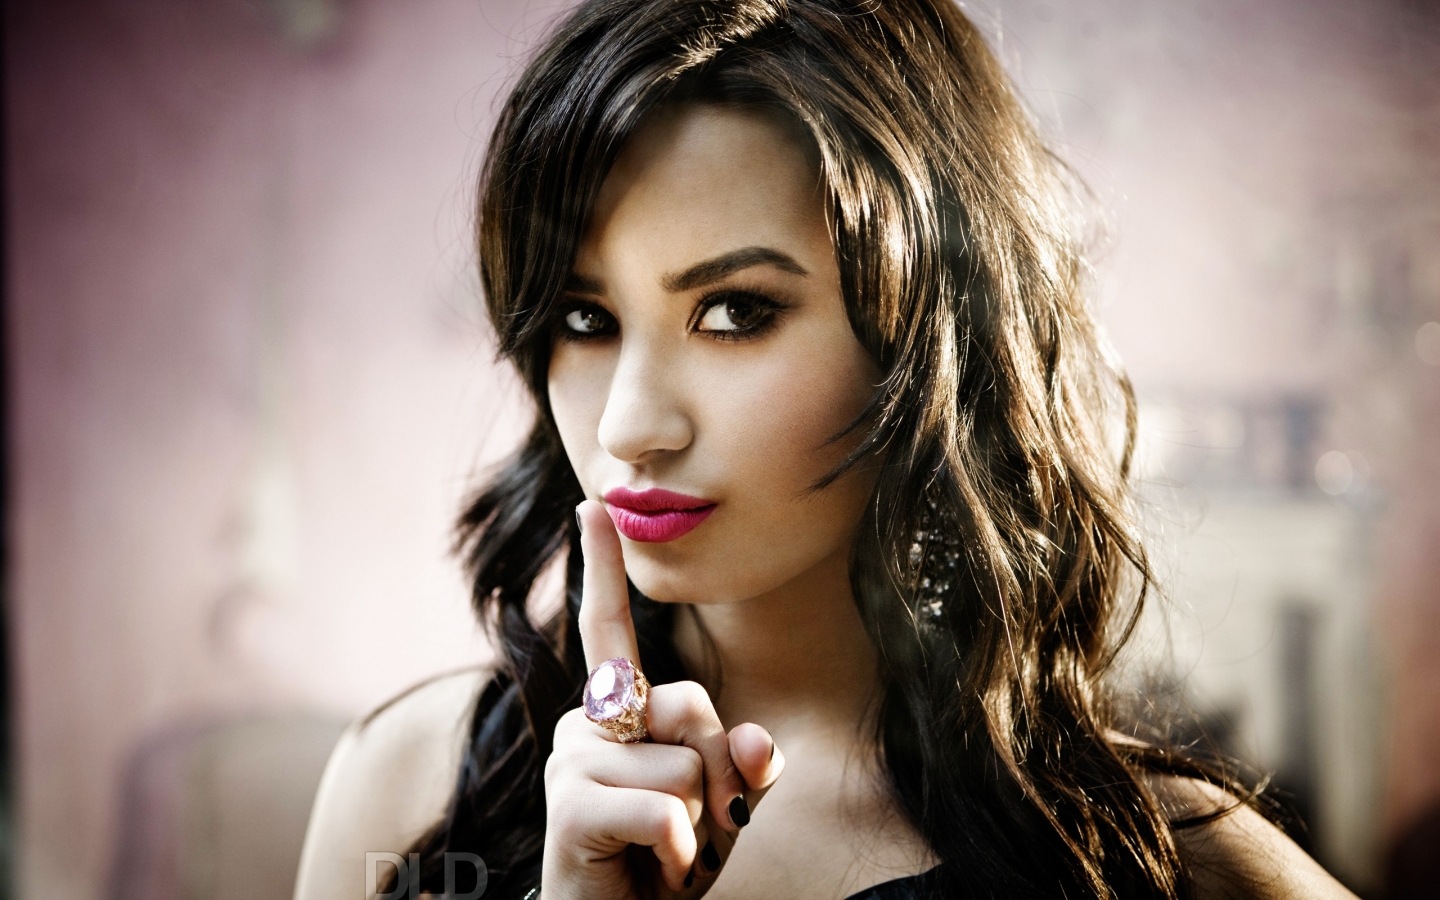 Demi Lovato Look for 1440 x 900 widescreen resolution